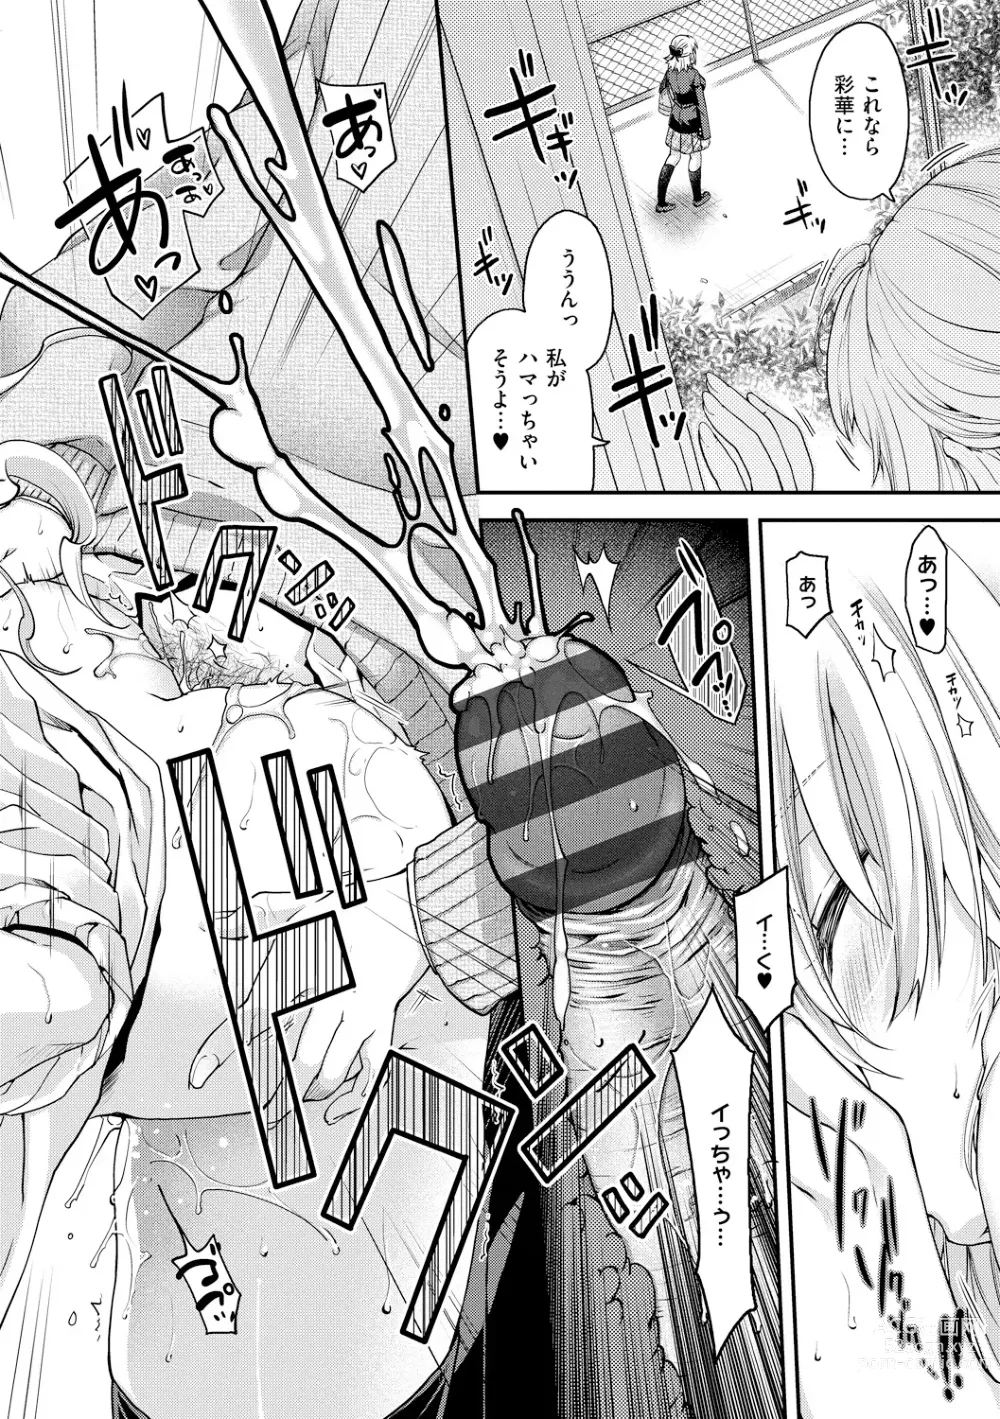 Page 210 of manga Chigiri to Musubi no Houteishiki